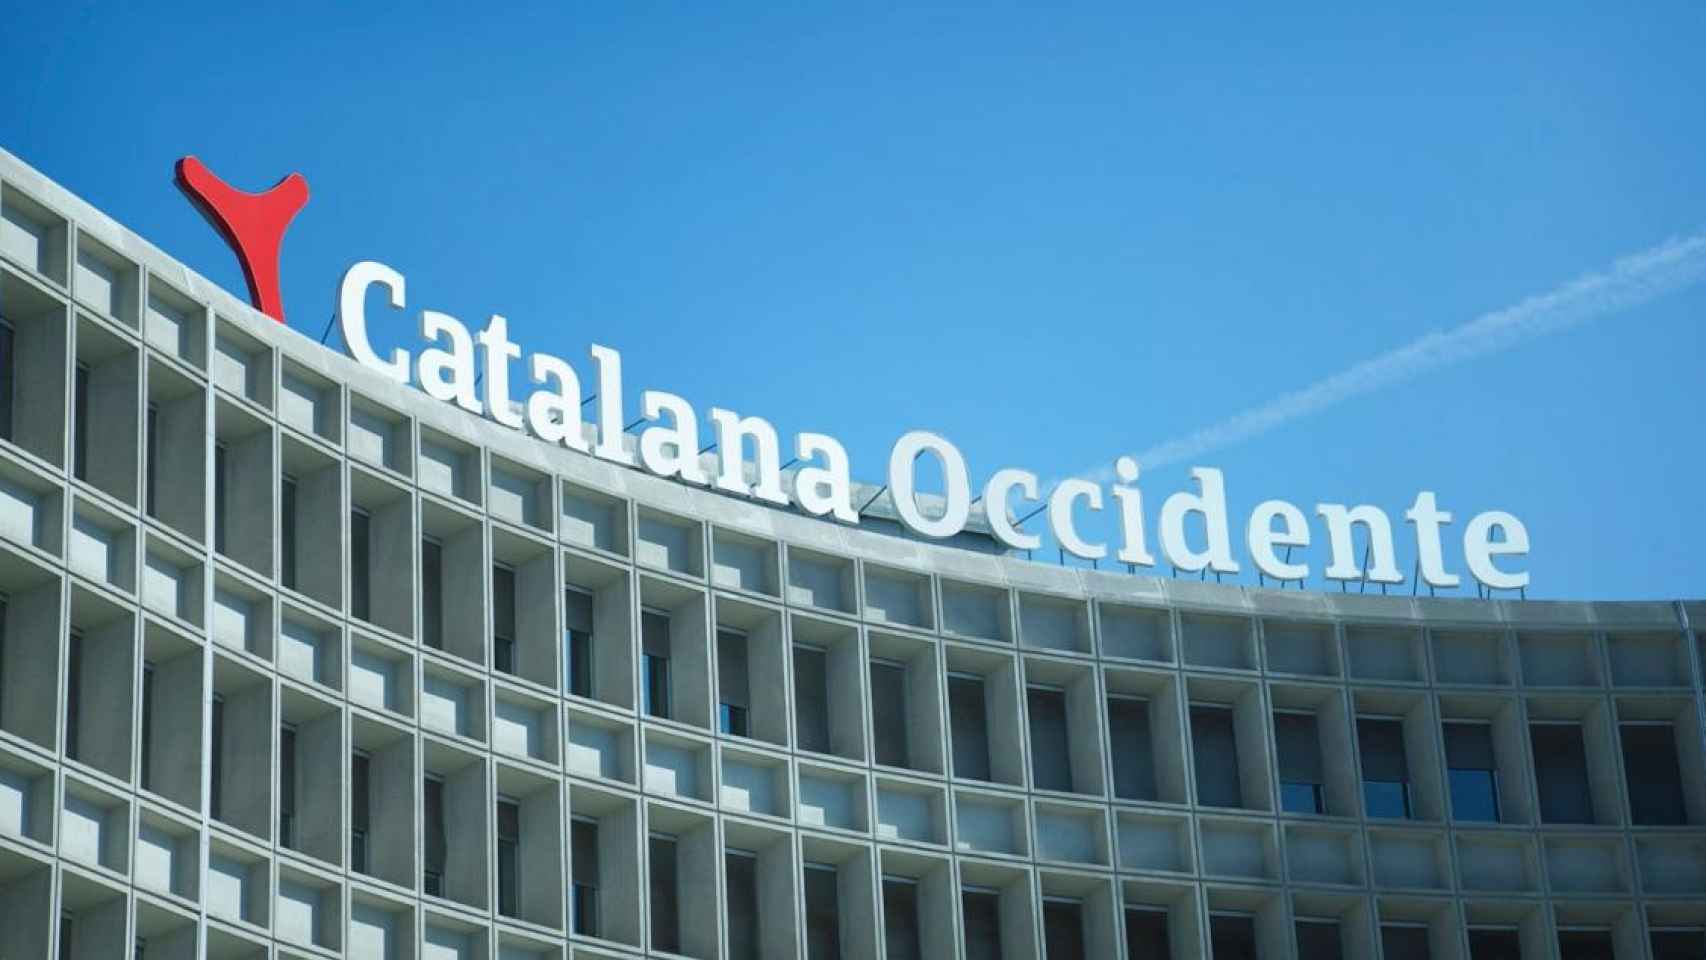 Oficinas centrales Grupo Catalana Occidente en Sant Cugat del Vallès (Barcelona) / CEDIDA